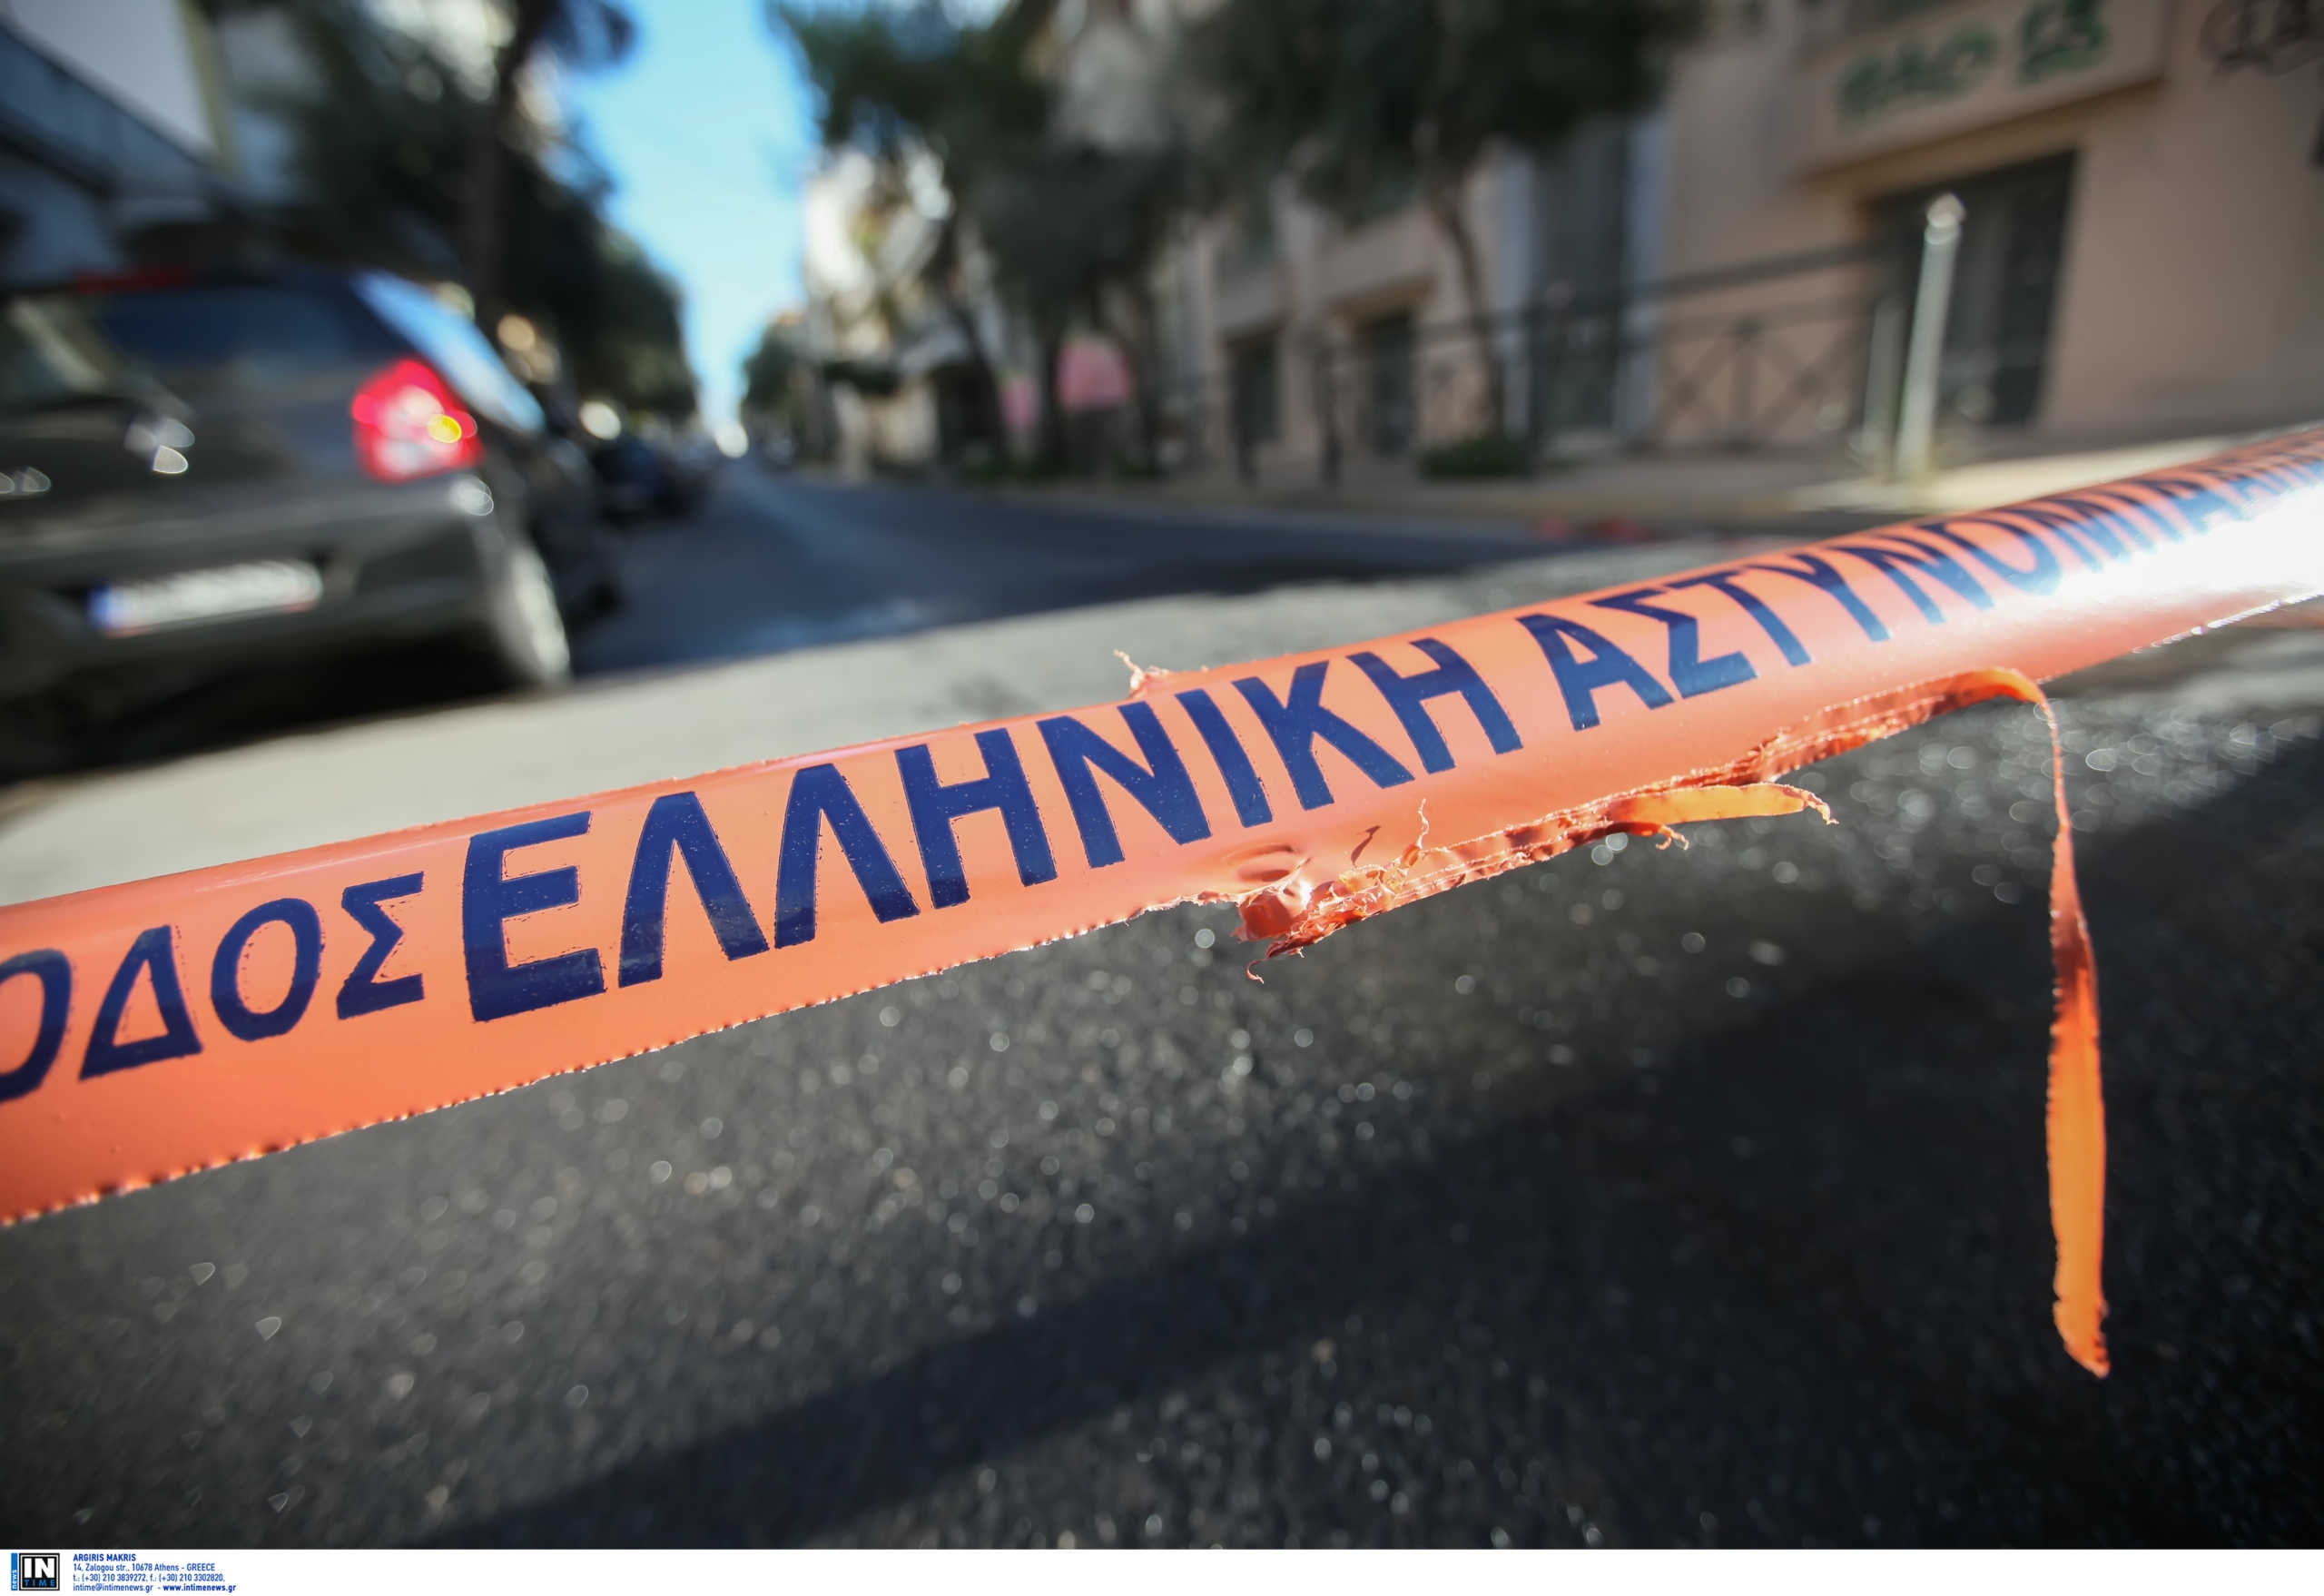 Θεσσαλονίκη: Ληστεία σε ψιλικατζίδικο με λεία 350 ευρώ! Έβγαλαν όπλο στον υπάλληλο